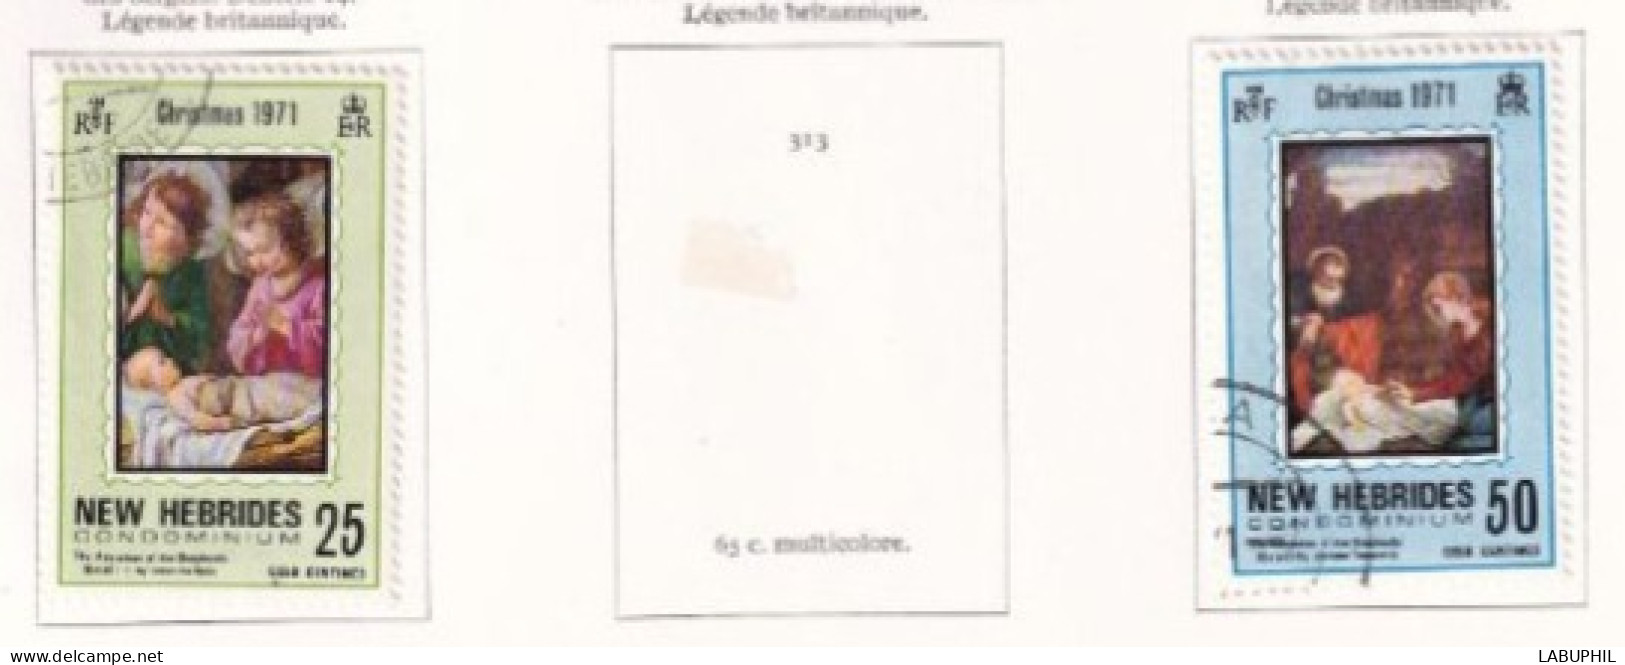 NOUVELLES HEBRIDES Dispersion D'une Collection Oblitéré Et Mlh   1971 - Usati